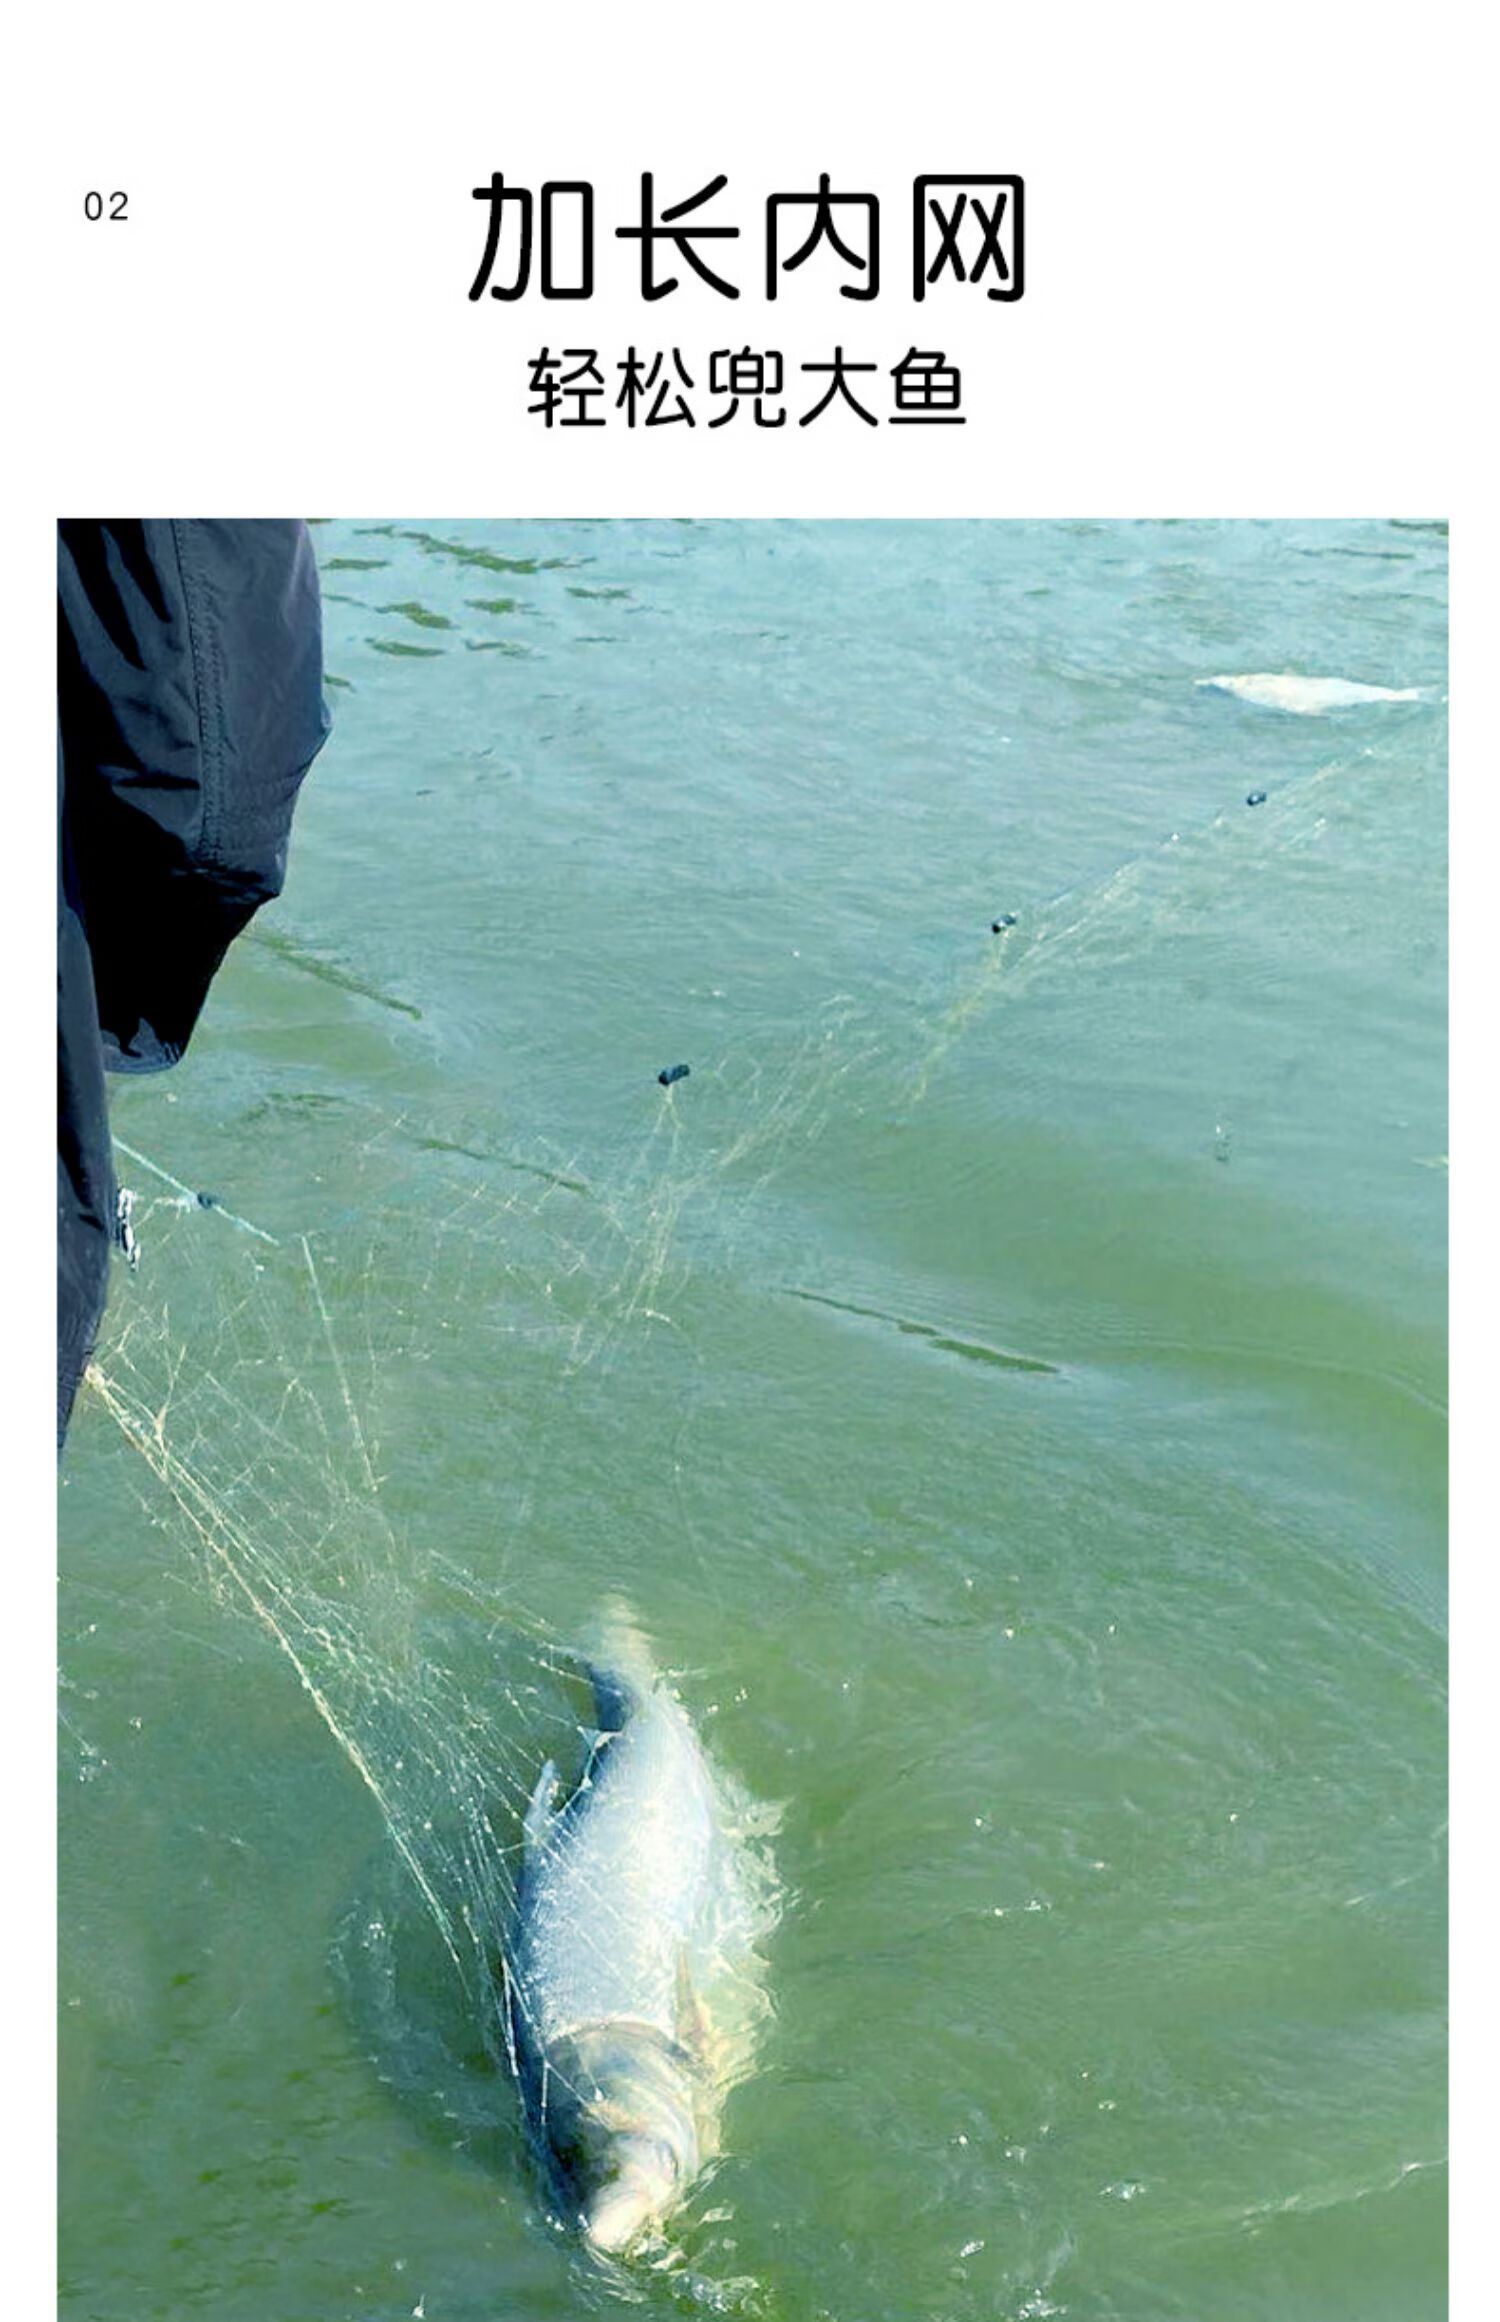 捕鱼网三层沉网逮鱼丝网不缠进口渔网浮网抓鱼神器升级加密2指15米高